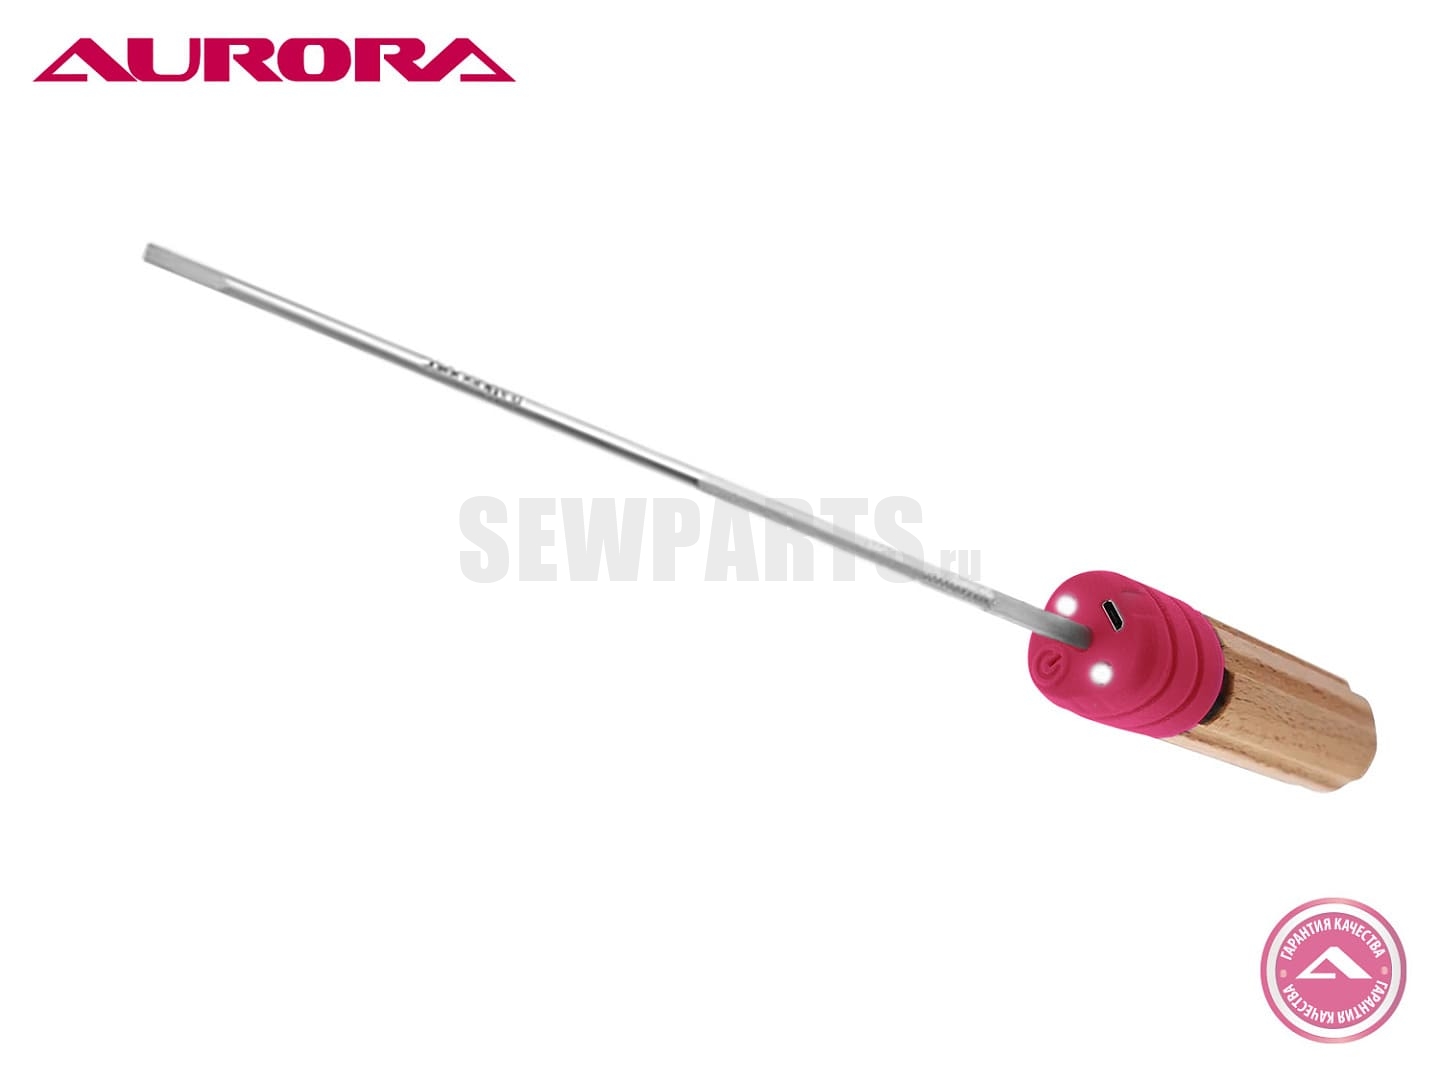 Отвёртка плоская для швейной машины Aurora SD8-6, 8 дюймов (205 мм)